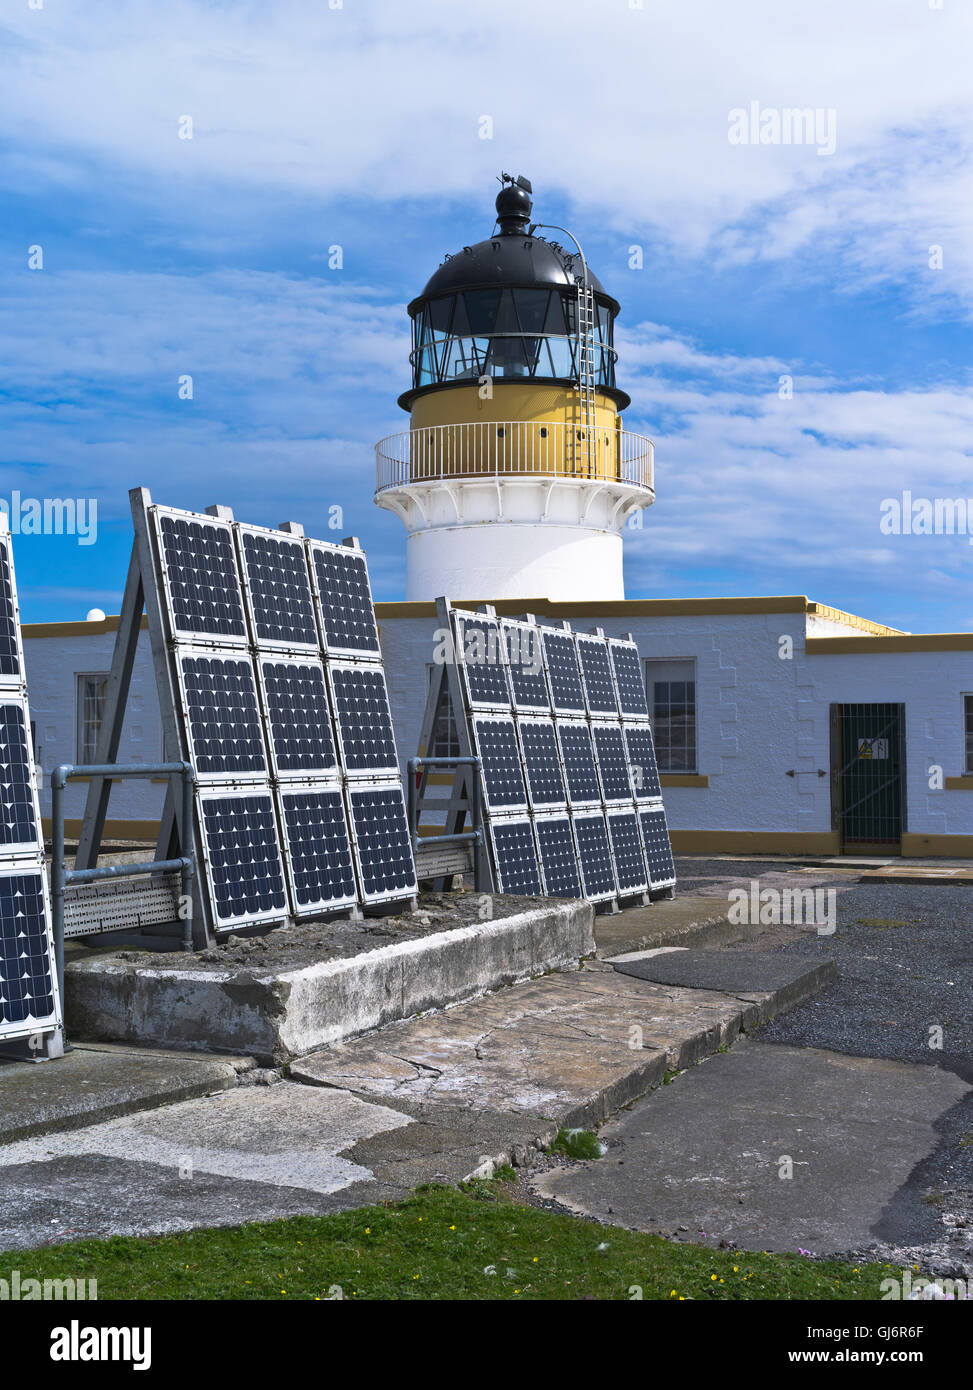 dh North Lighthouse FAIR ISLE SHETLAND panneaux solaires maison de lumière bâtiments Ecosse panneau photovoltaïque uk Lighthouses pv système Banque D'Images